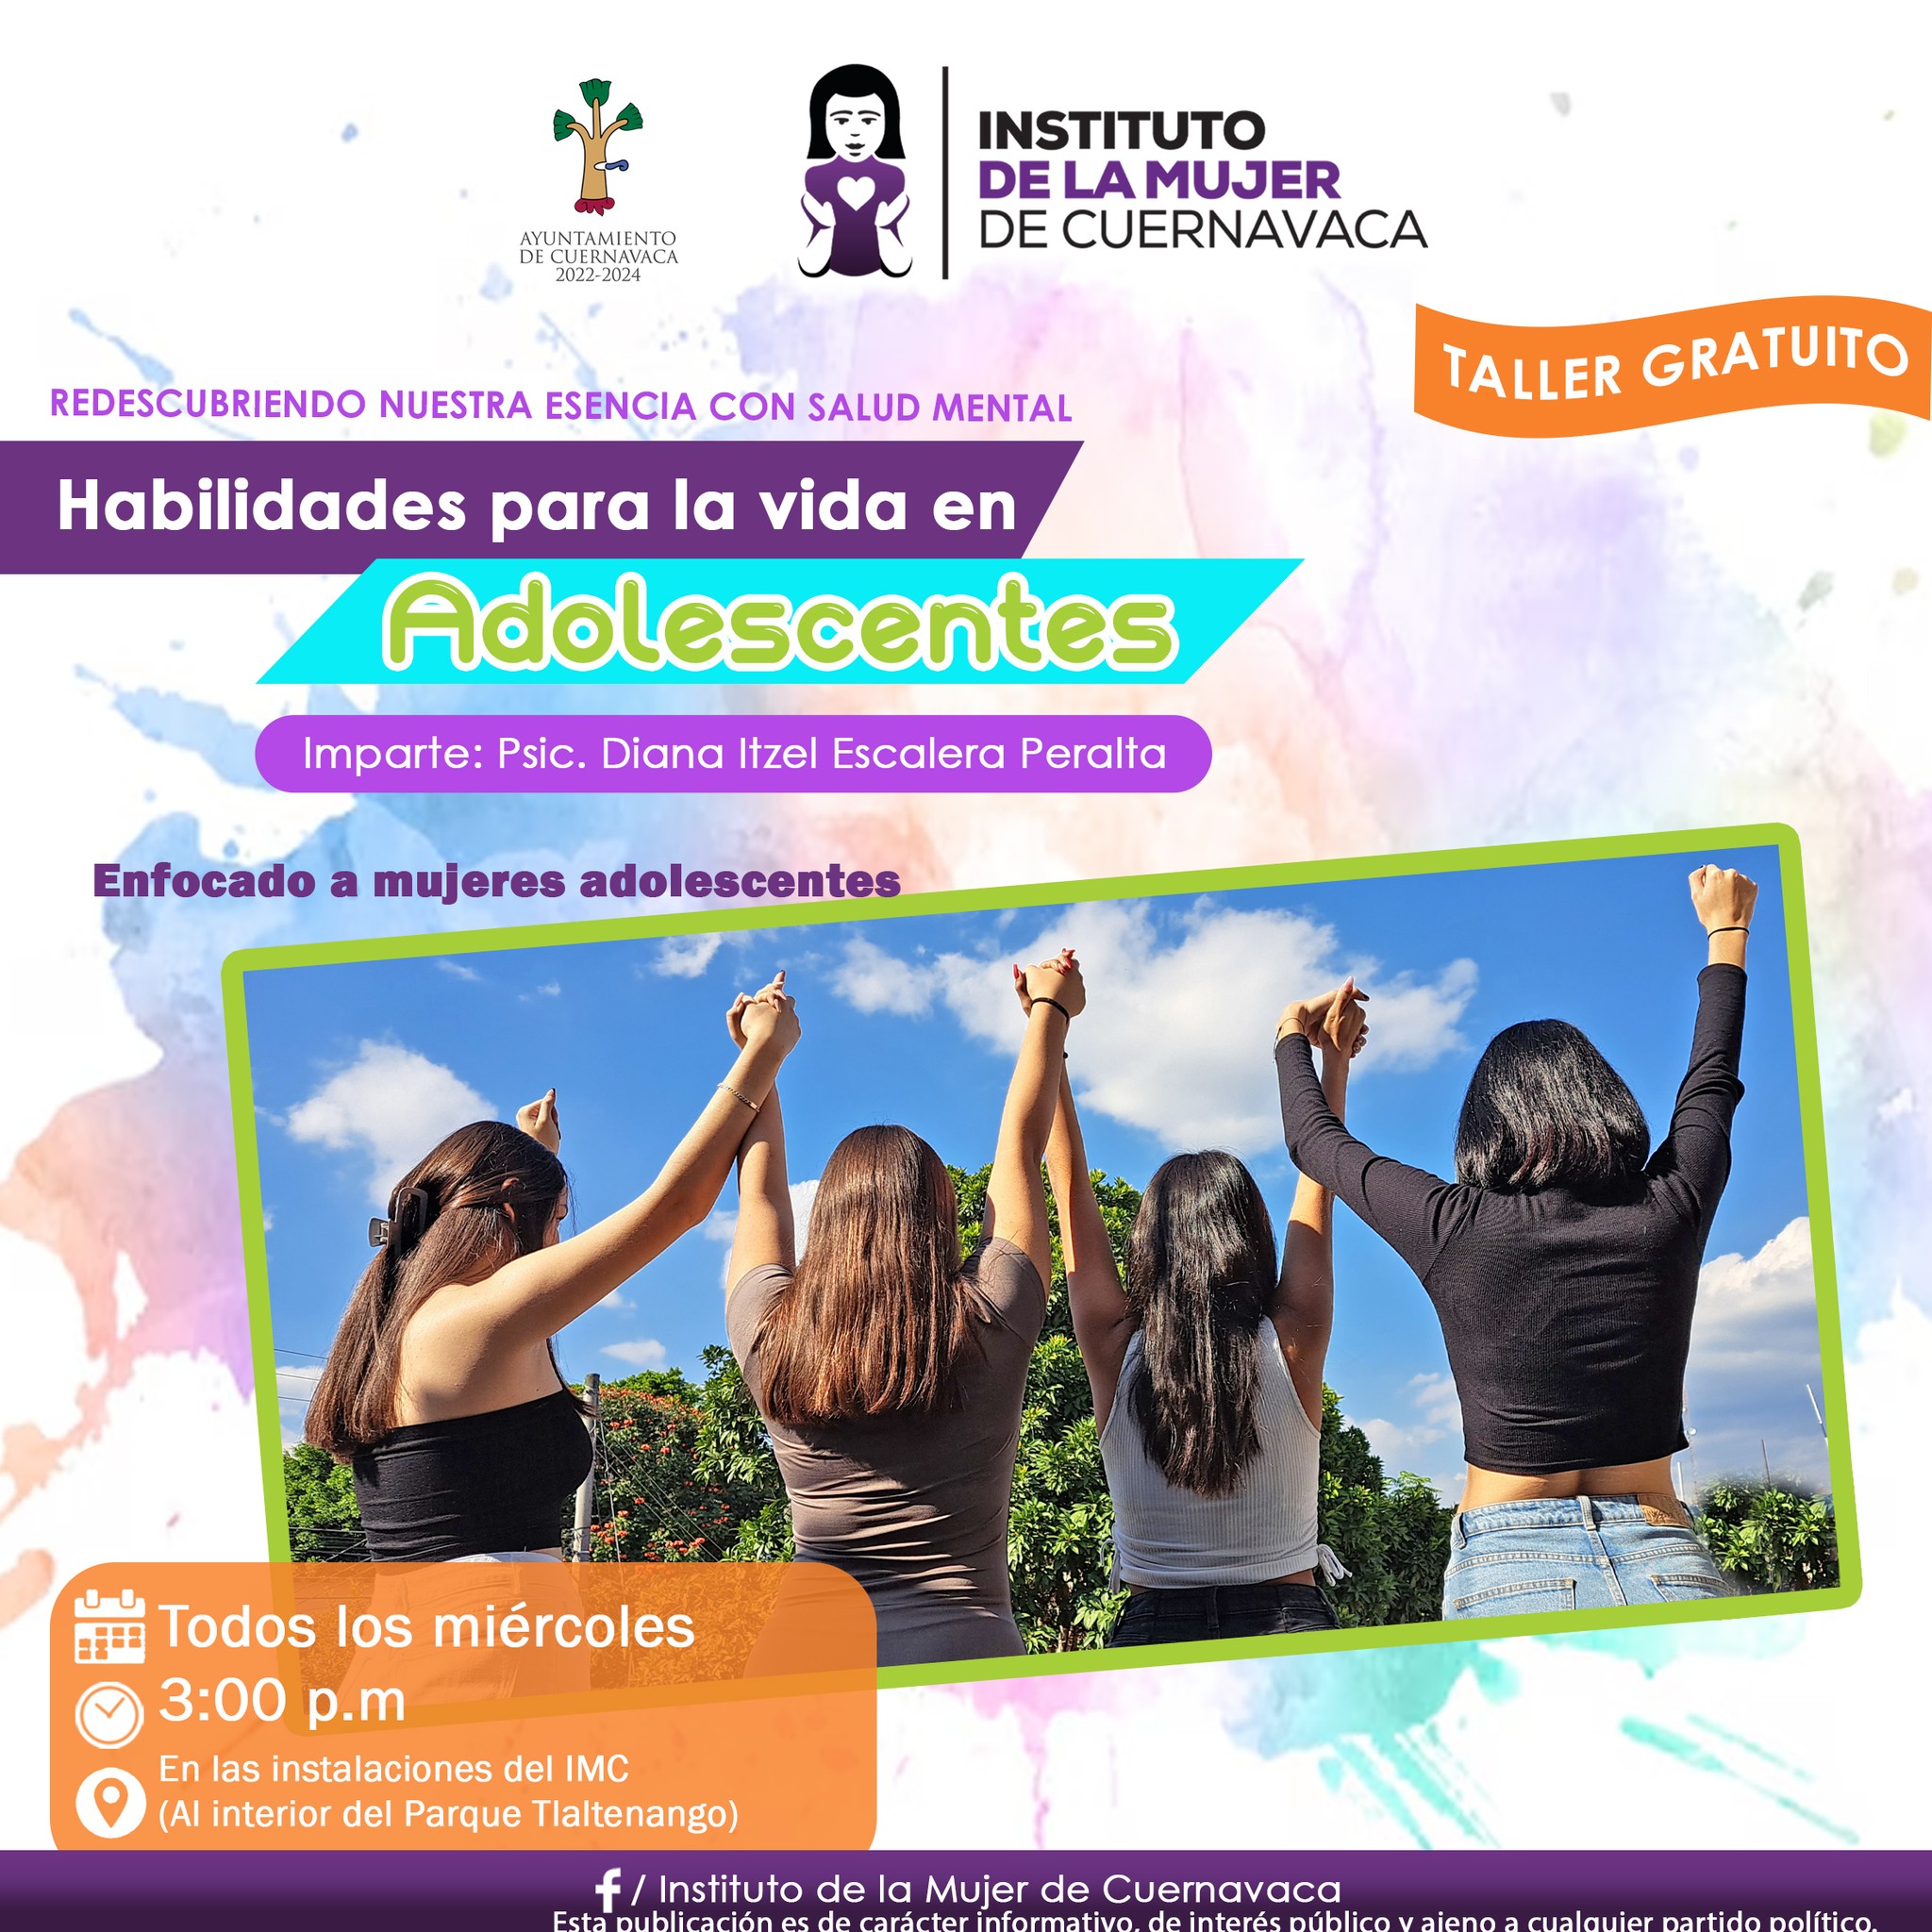 Taller gratuito Habilidades para la vida en adolescentes - Instituto de la Mujer de Cuernavaca